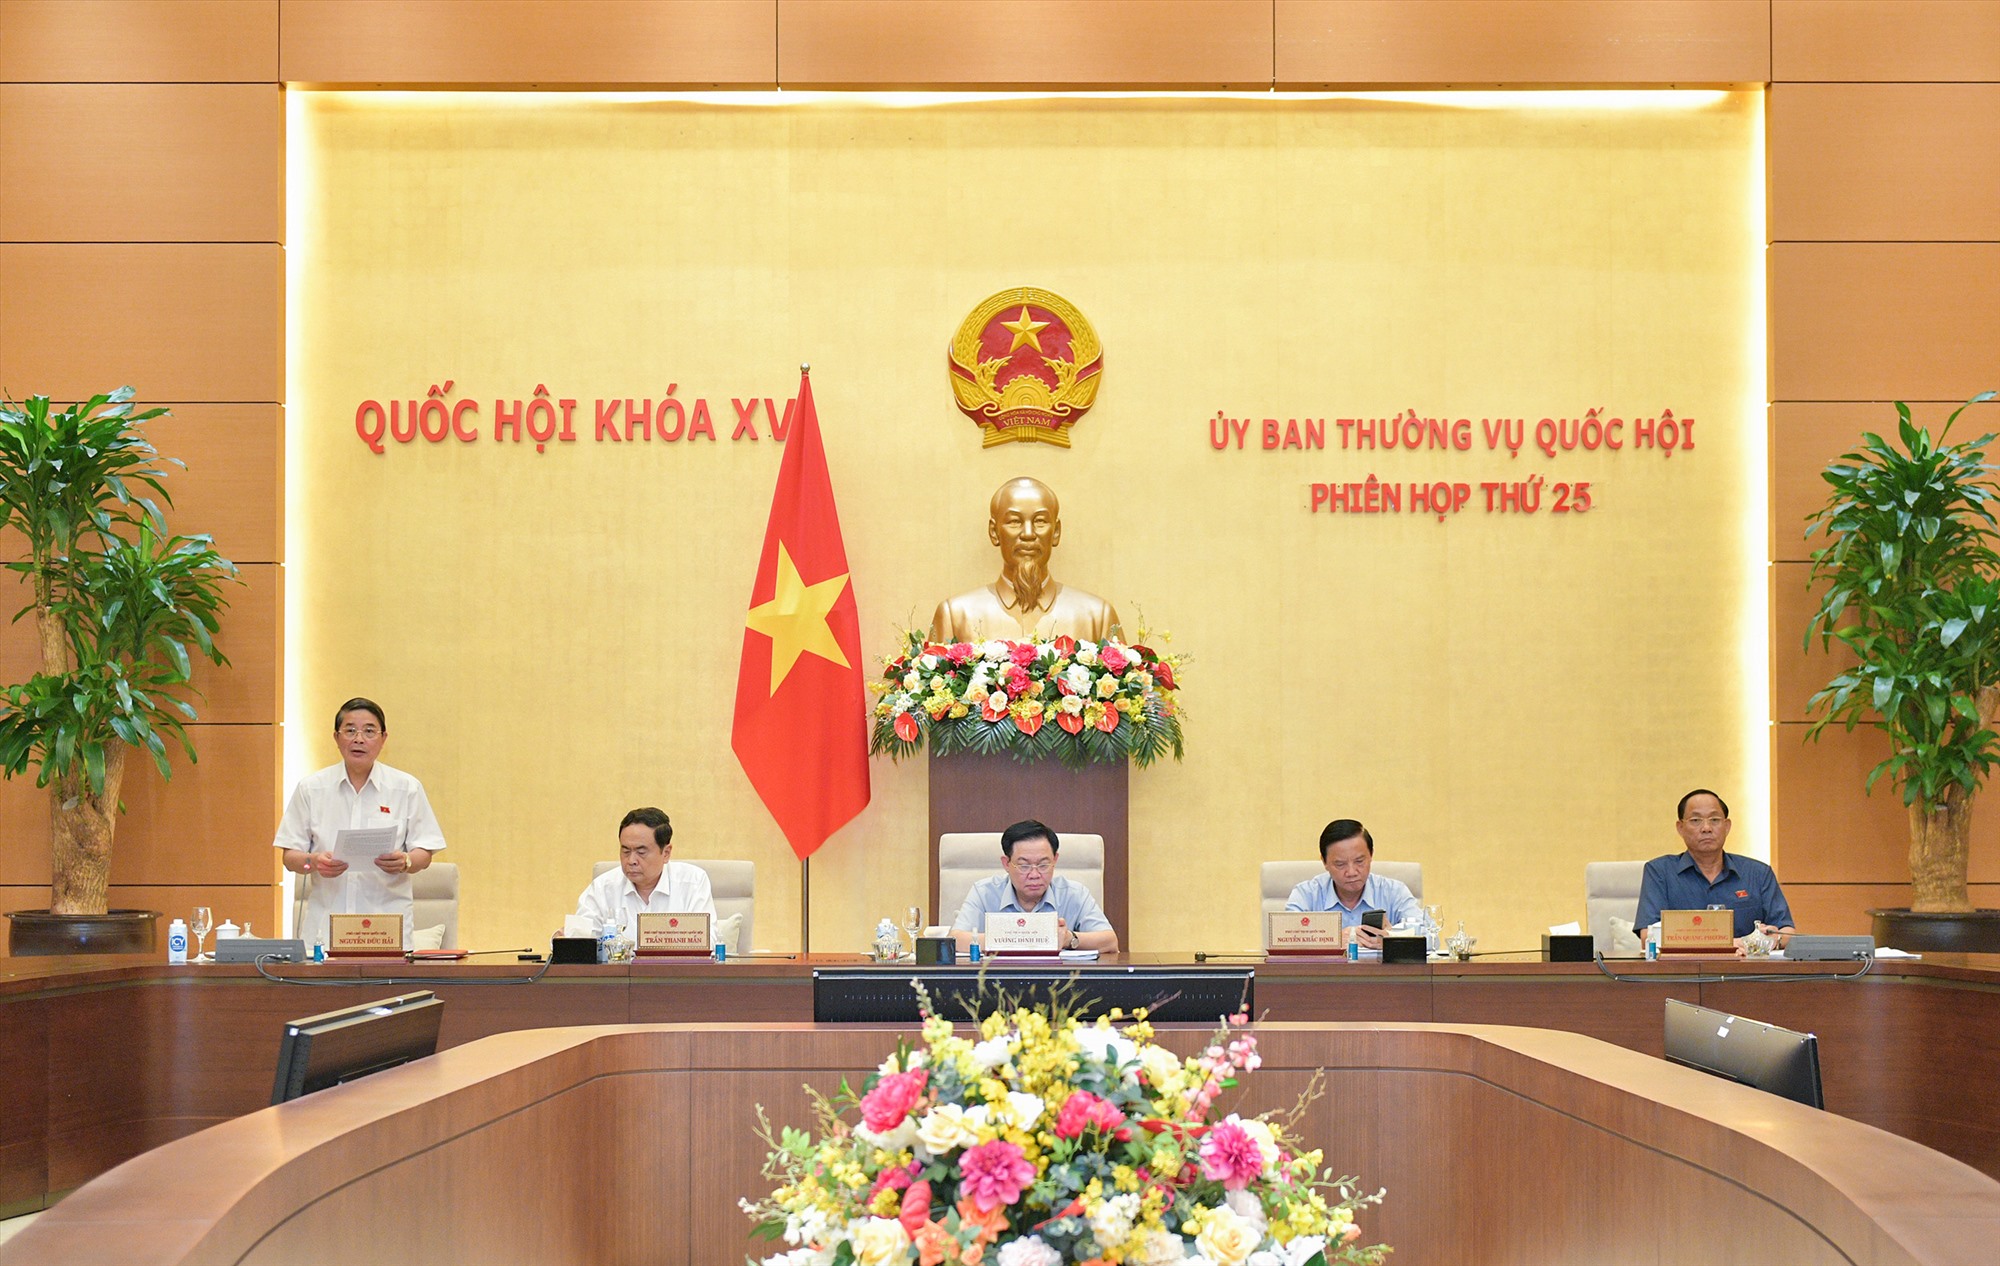 Phó Chủ tịch Quốc hội Nguyễn Đức Hải điều hành nội dung phiên họp. Ảnh: Phạm Thắng/QH